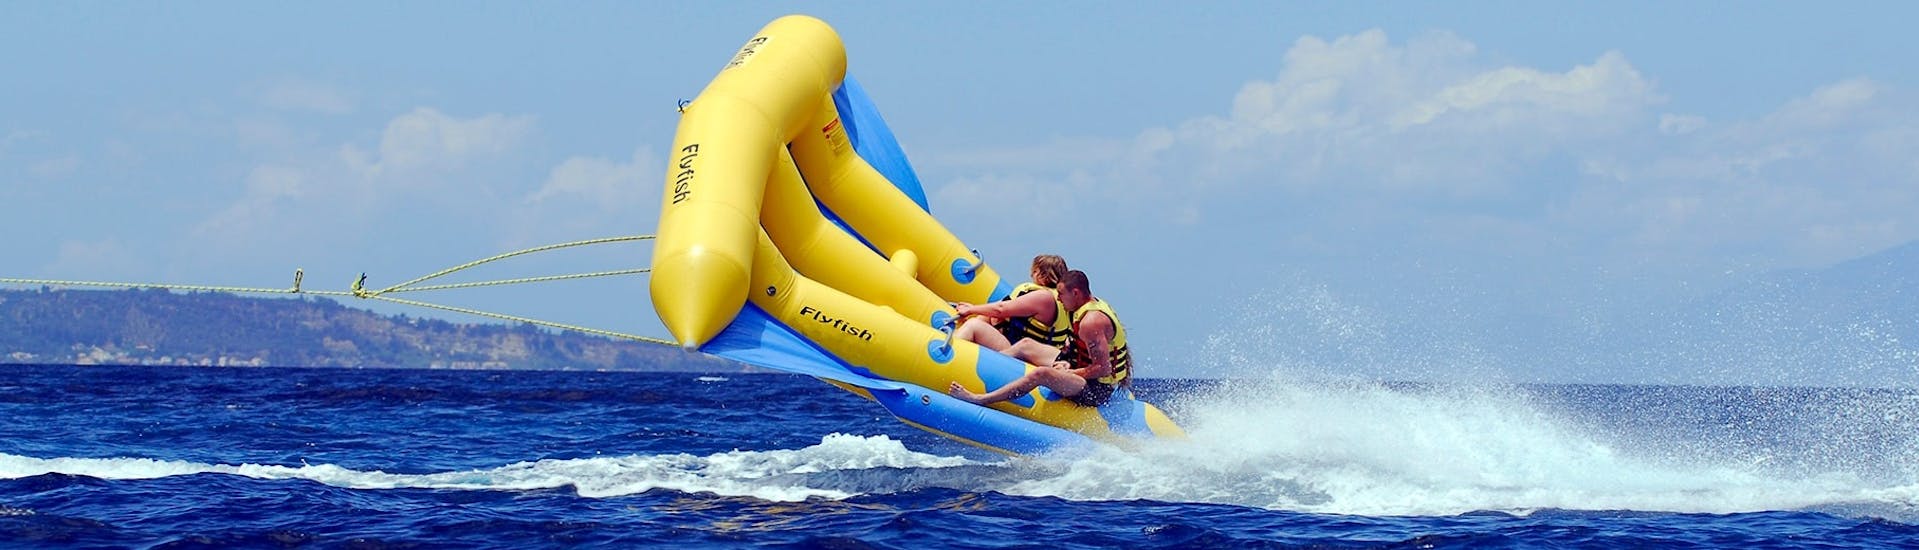 Freunde amüsieren sich mit einem Banana-Boat und weitere Spaßboote am Banana Beach mit Banana Watersports.